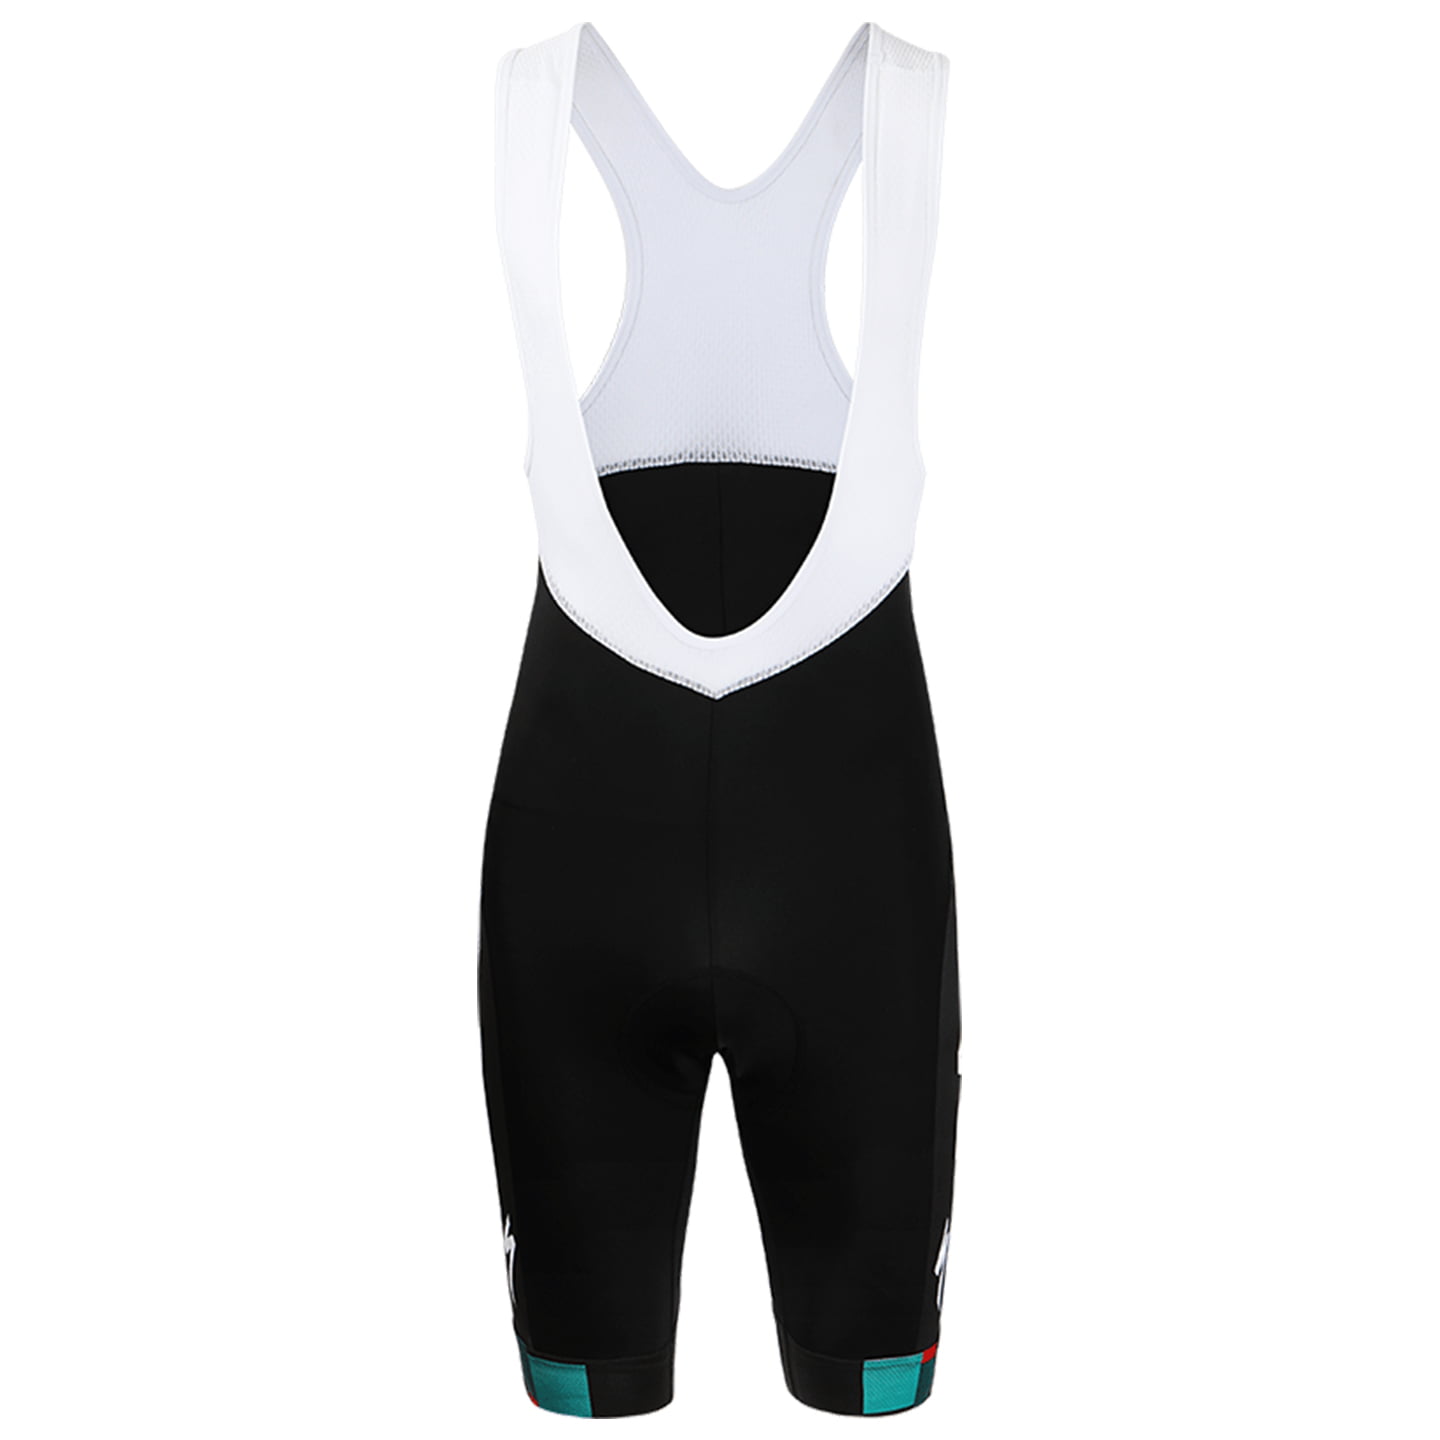 BORA-hansgrohe 2022 Bib Shorts, for men, size L, Cycle shorts, Cycling clothing